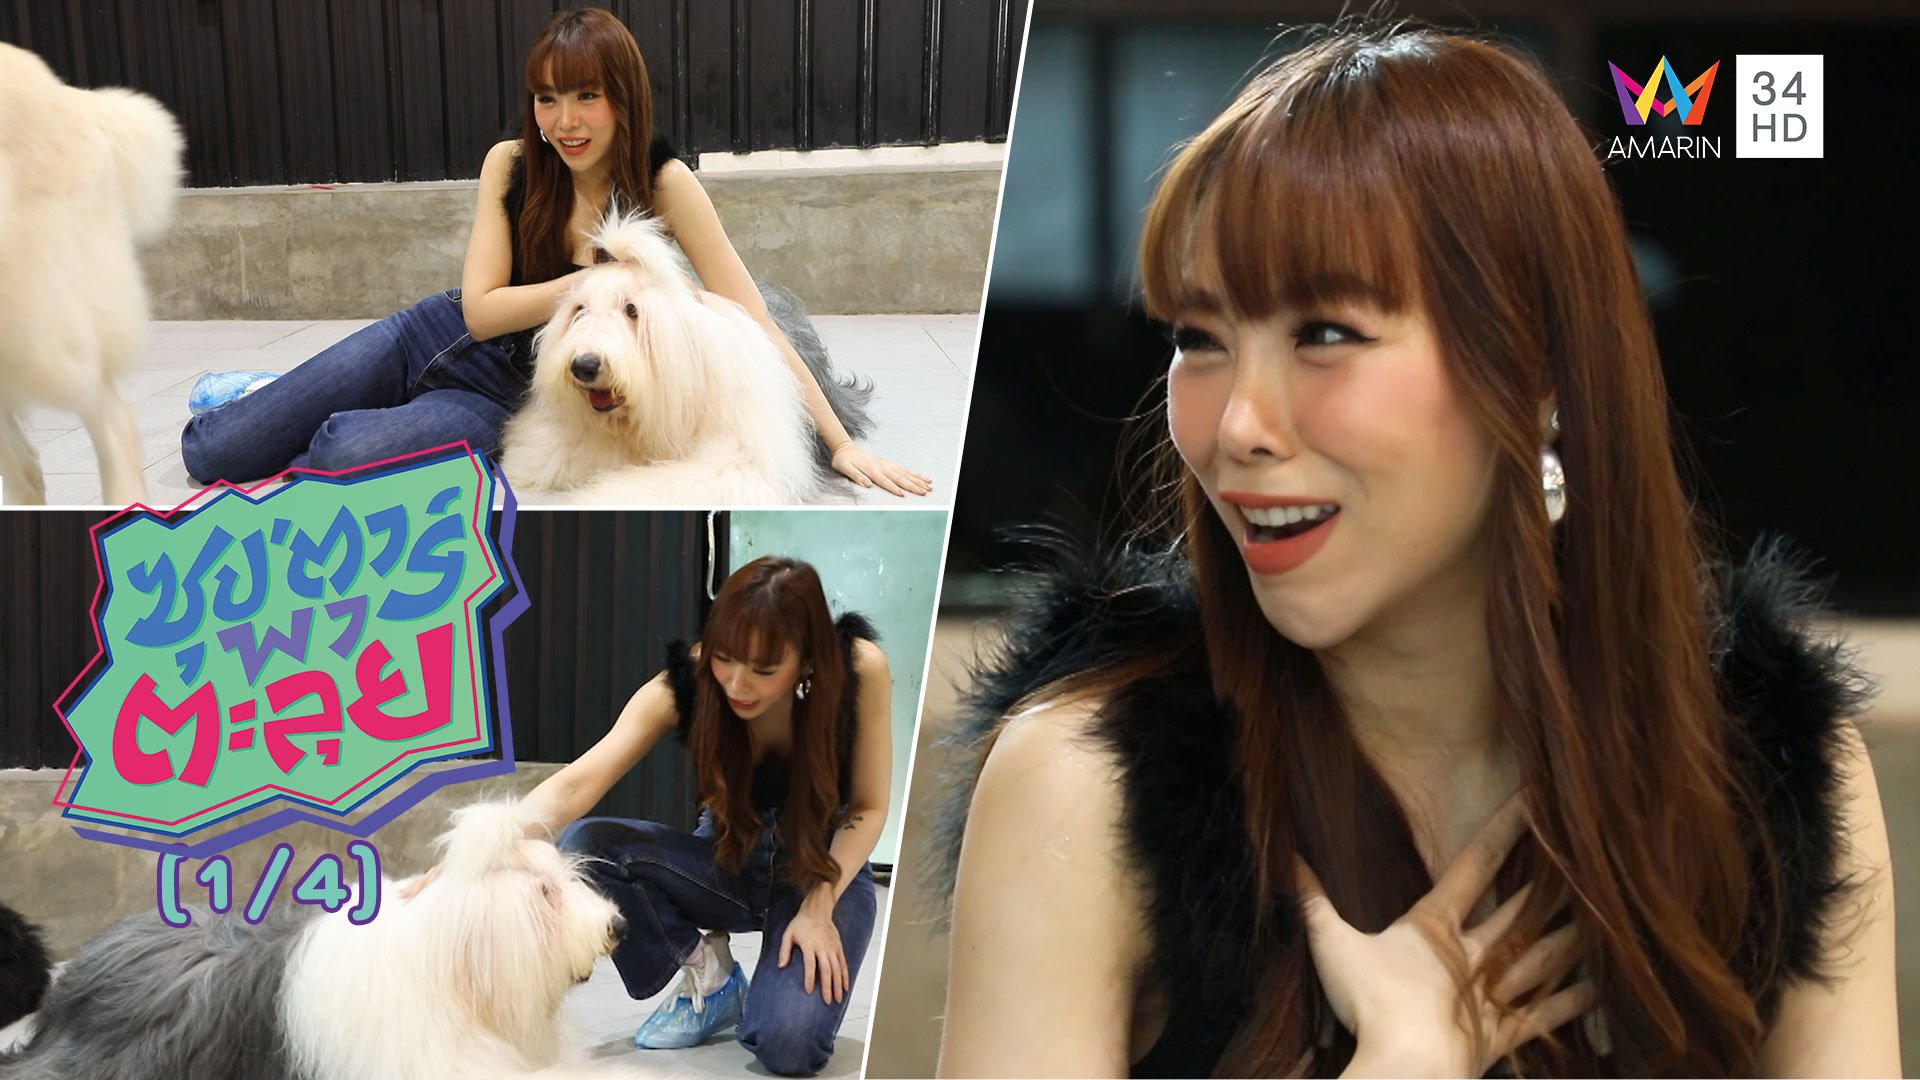 'ซานิ นิภาภรณ์' สาวสวยรักสัตว์ พาเล่นกับสุนัขสายพันธุ์ใหญ่ | ซุปตาร์พาตะลุย | 20 ส.ค. 63 (1/4) | AMARIN TVHD34